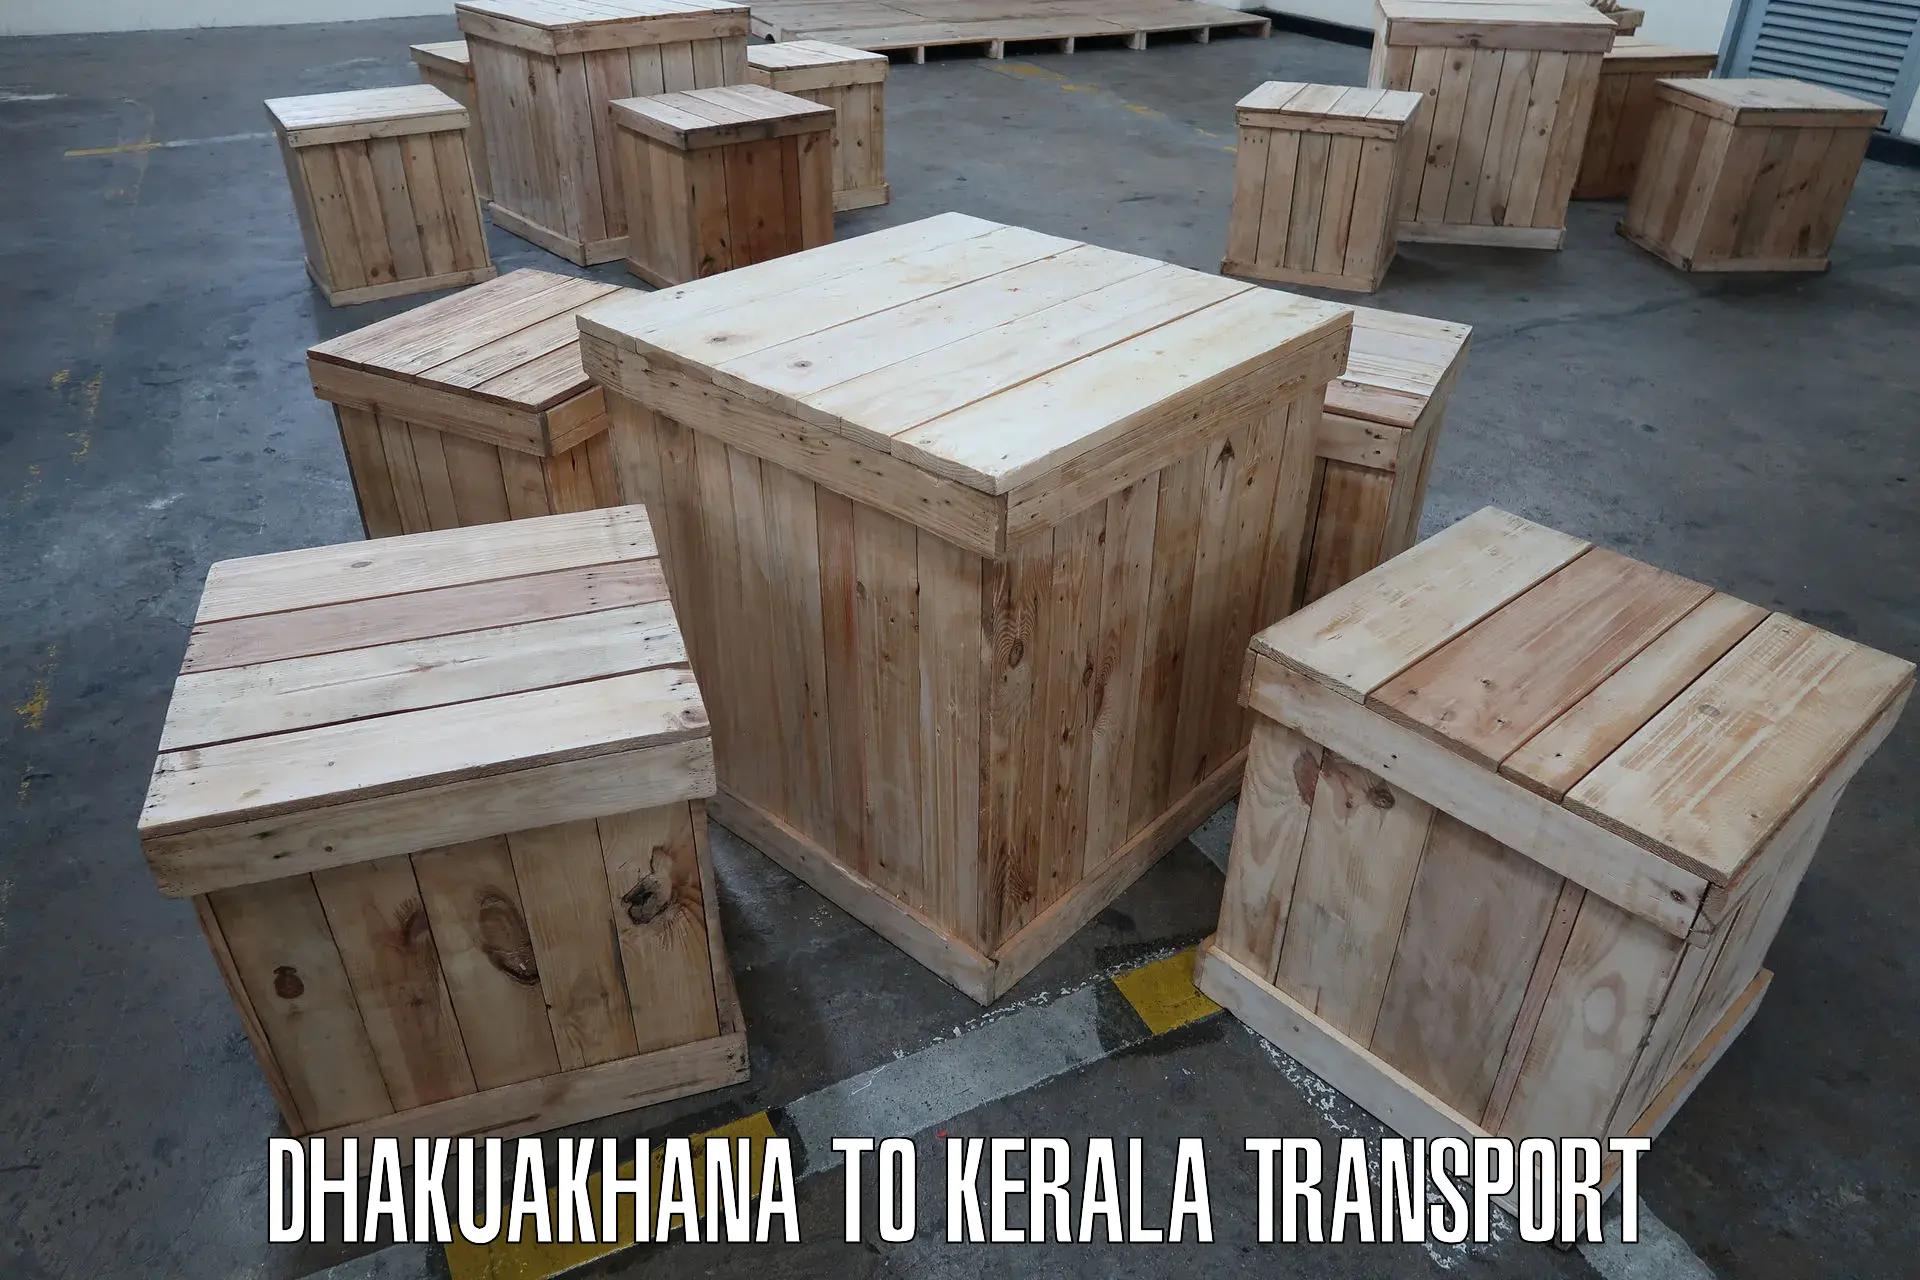 Cargo transportation services Dhakuakhana to Mundakayam